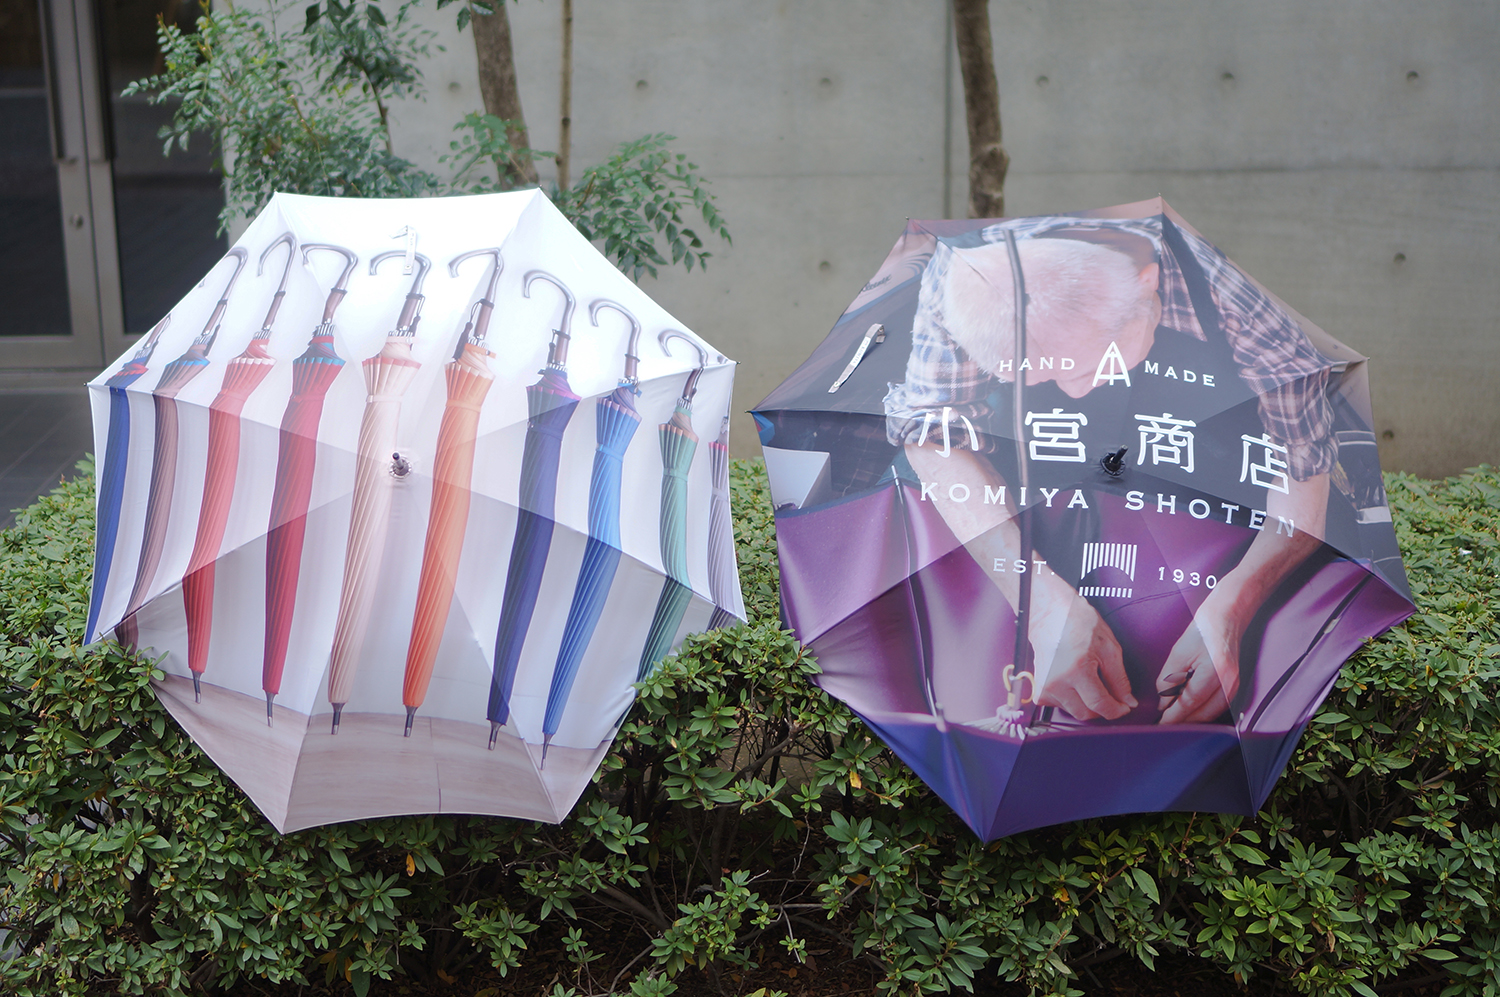 インクジェットプリントを使用した一枚張りの傘 傘専門店 小宮商店